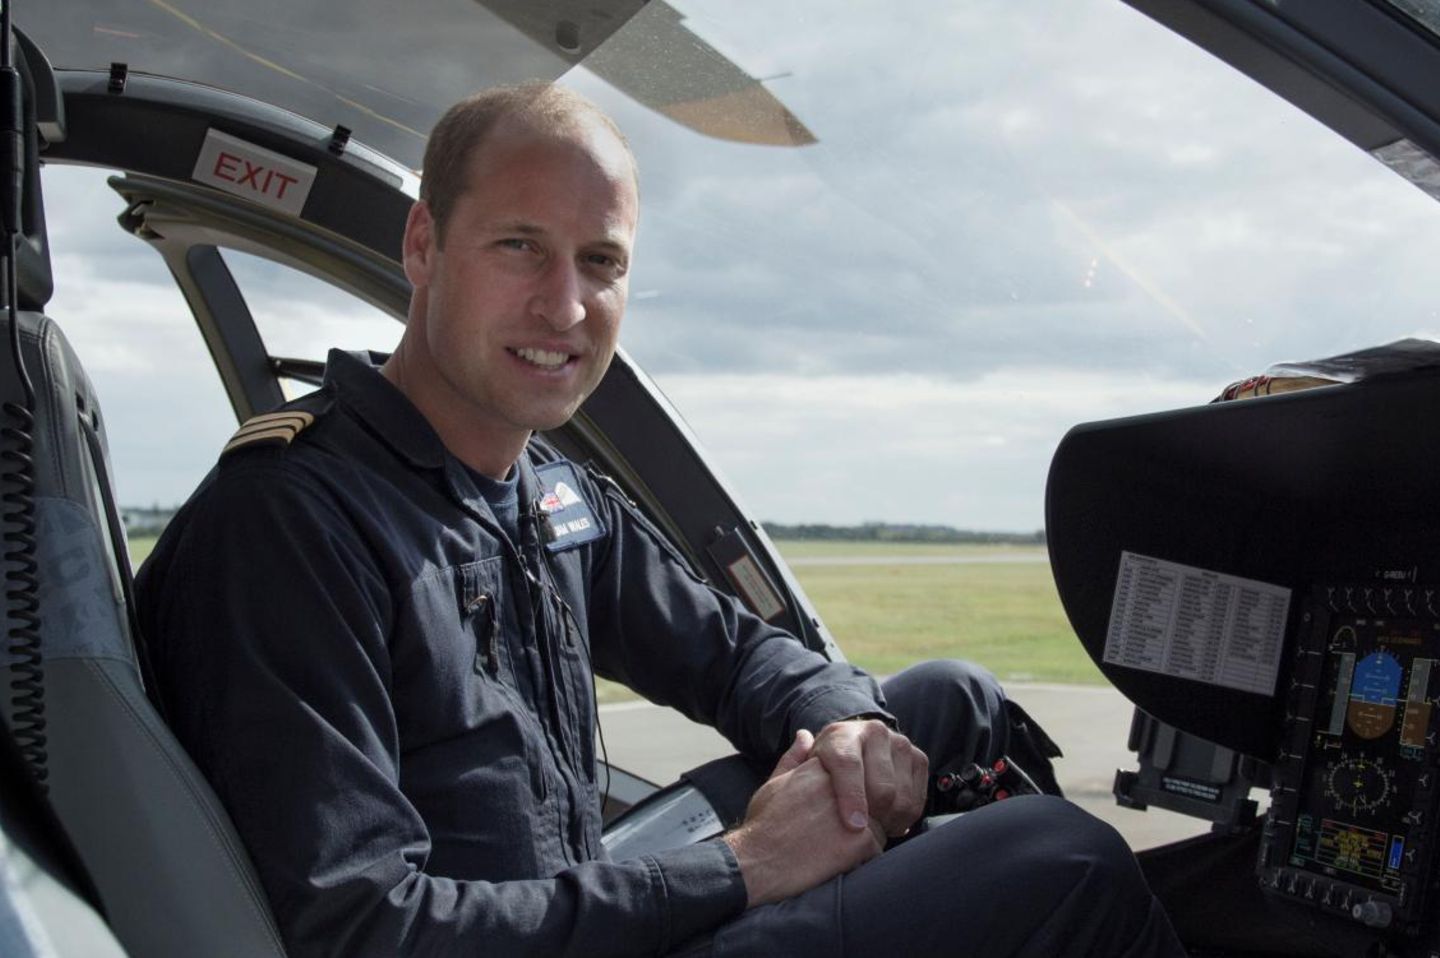 Die BBS-Doku zeigt Prinz William im Einsatz für die "East Anglian Air Ambulance", wo er seit vergangenem Sommer als Pilot im Schichtdienst eingesetzt ist.